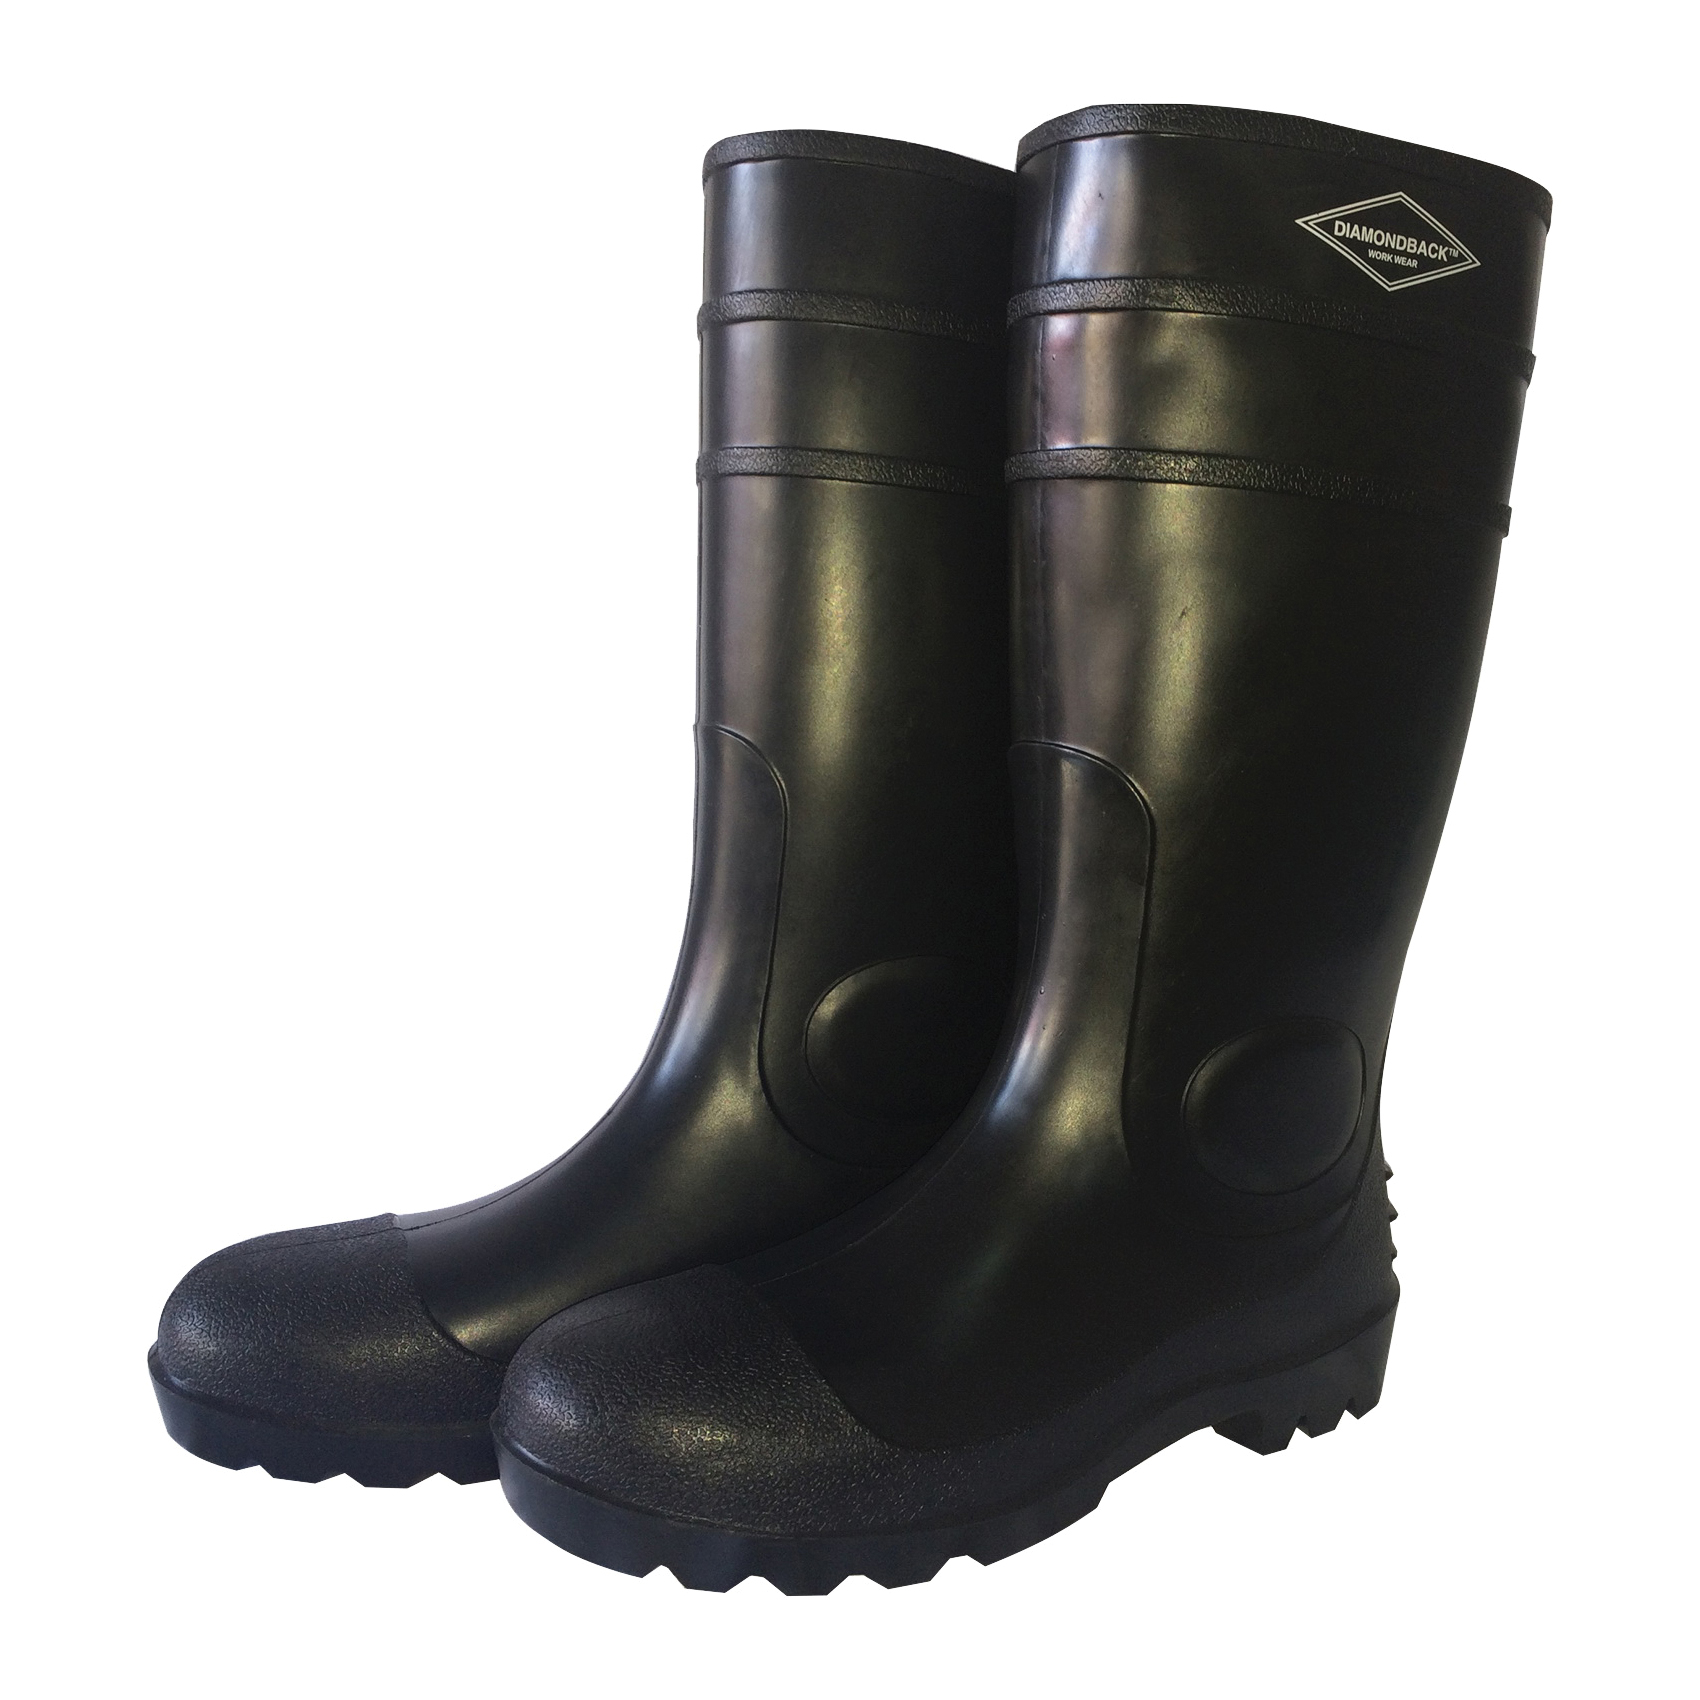 L-G06B14 Knee Boots, 14, Black, PVC Upper